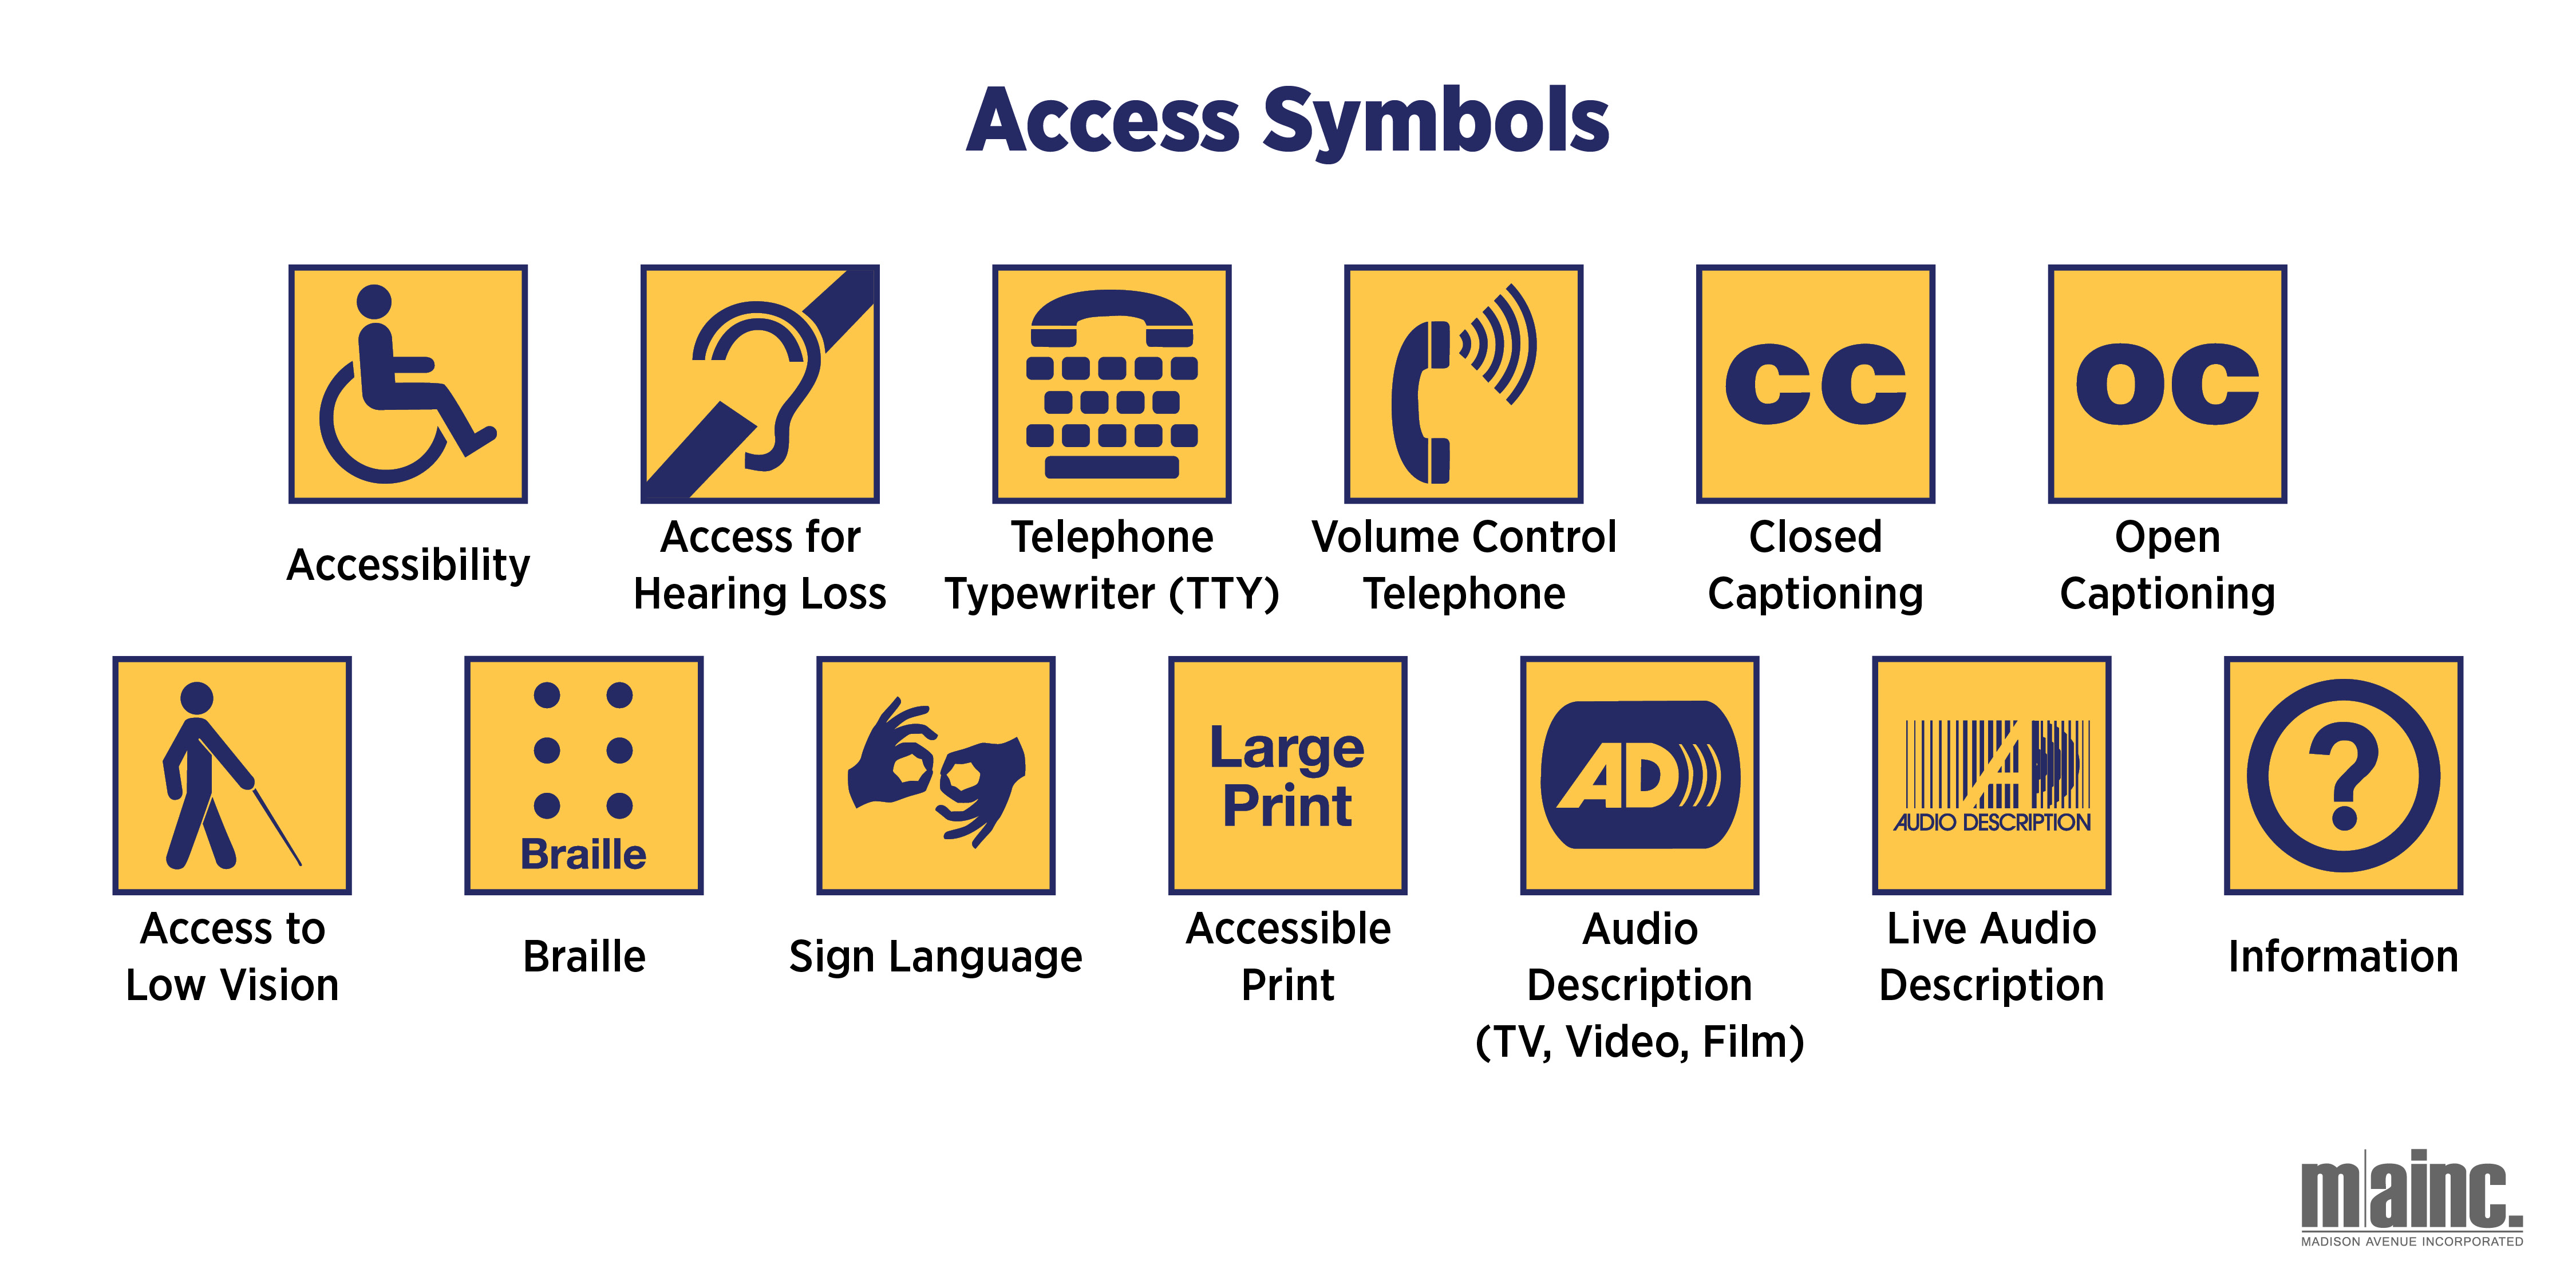 Access Symbols